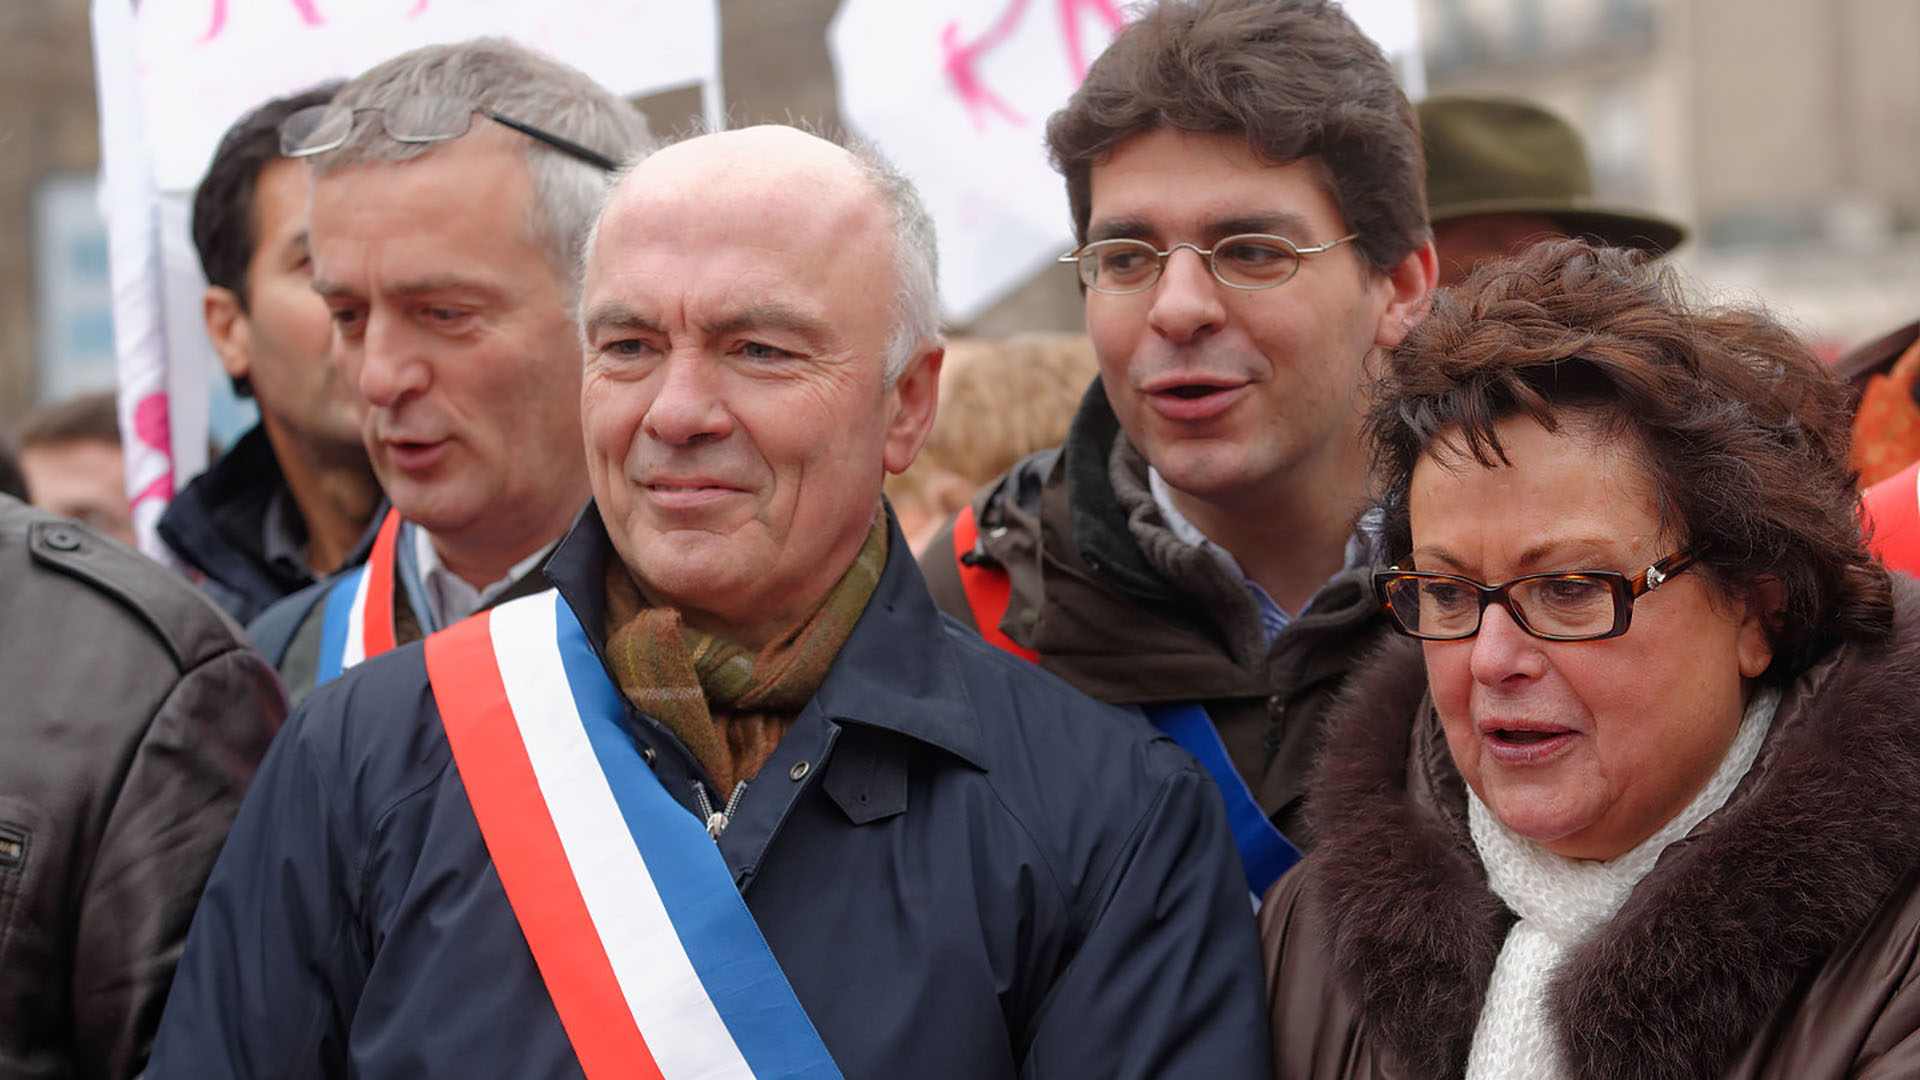 Le député français Marc Le Fur, pendant le Manif pour tous, à Paris, en janvier 2013. (Photo: Wikimedia Commons/Marie-Lan Nguyen/CC BY 2.5)